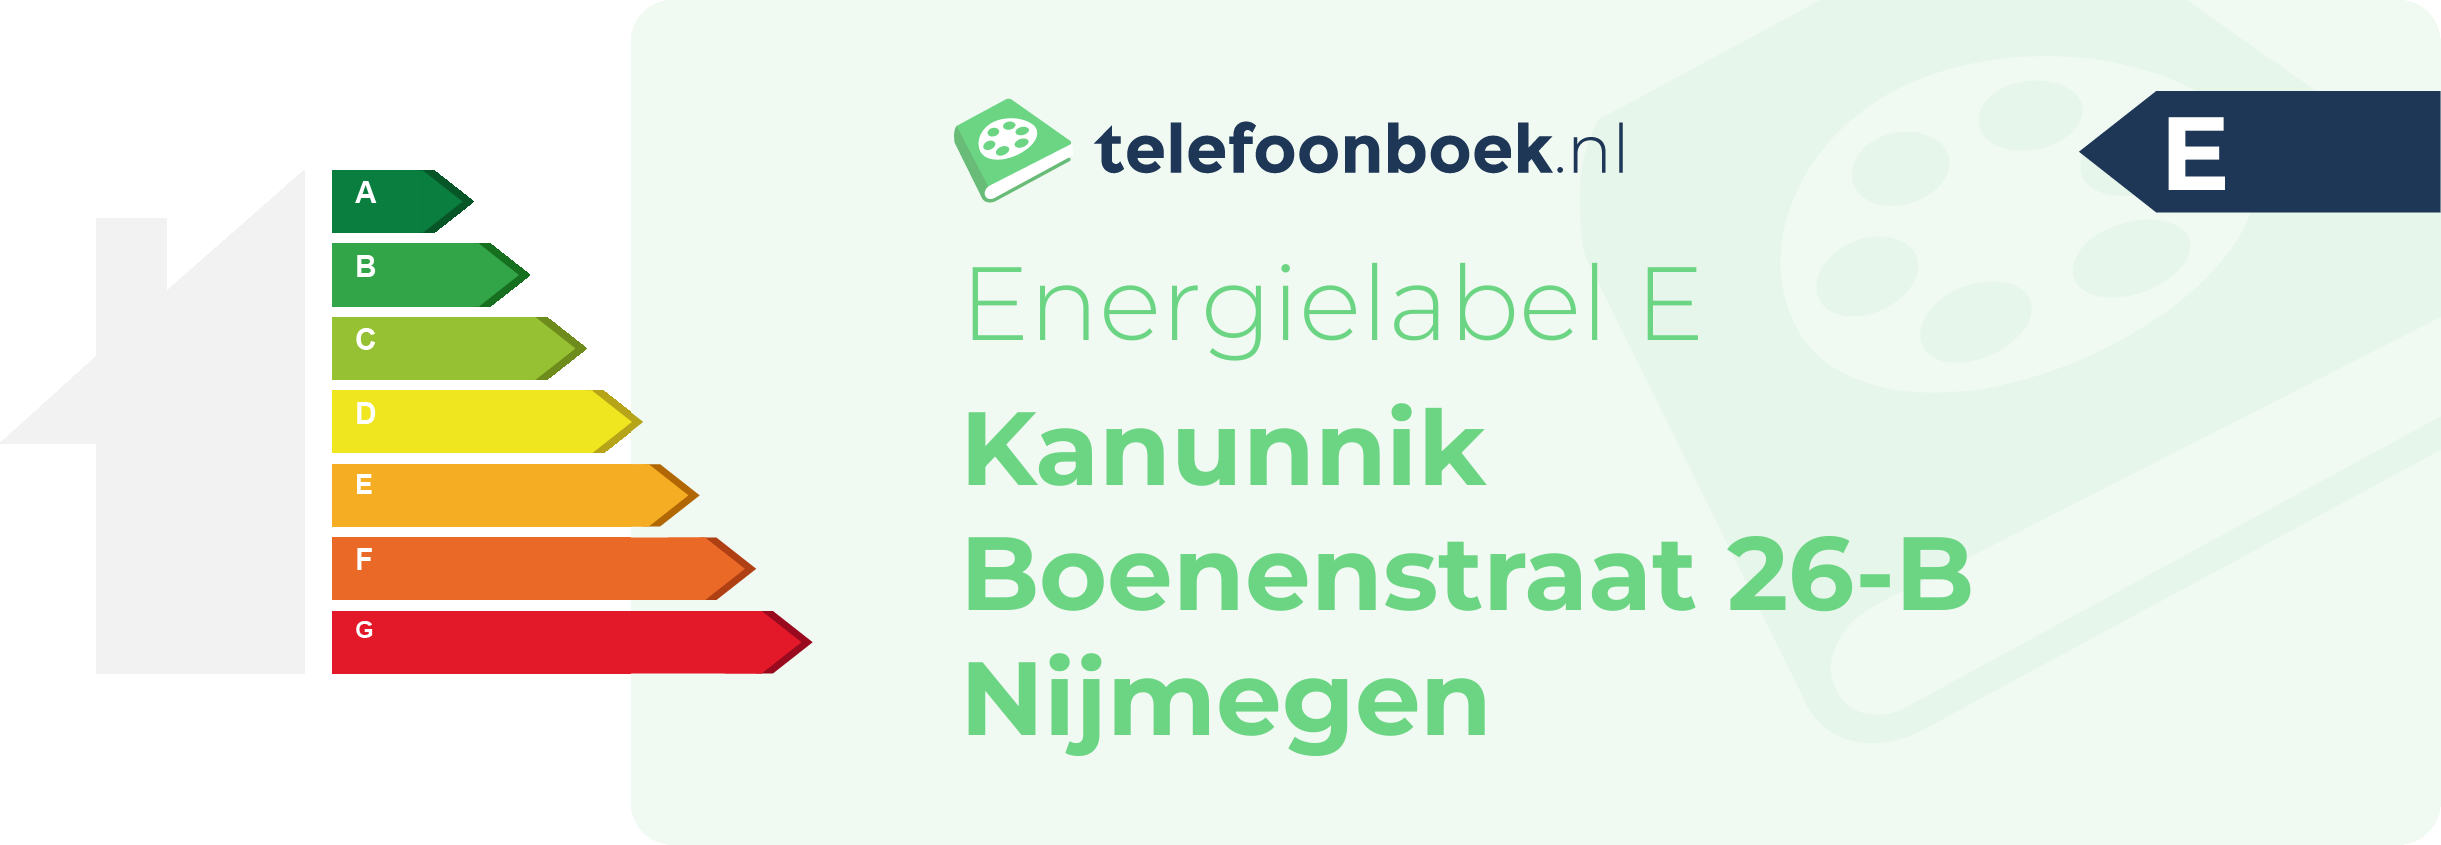 Energielabel Kanunnik Boenenstraat 26-B Nijmegen